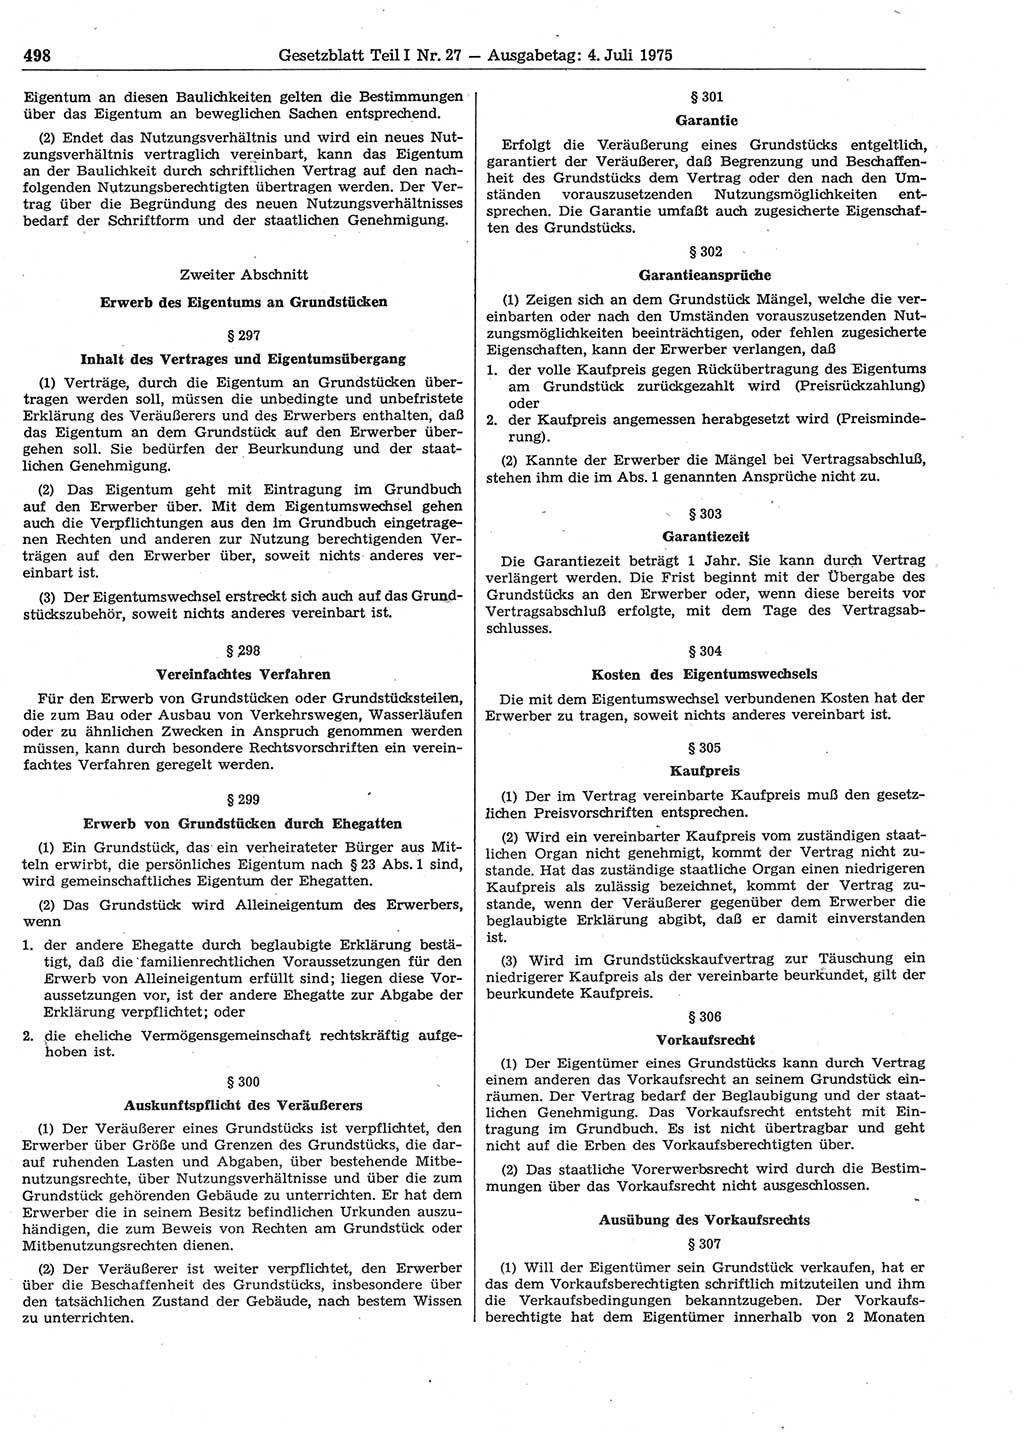 Gesetzblatt (GBl.) der Deutschen Demokratischen Republik (DDR) Teil Ⅰ 1975, Seite 498 (GBl. DDR Ⅰ 1975, S. 498)